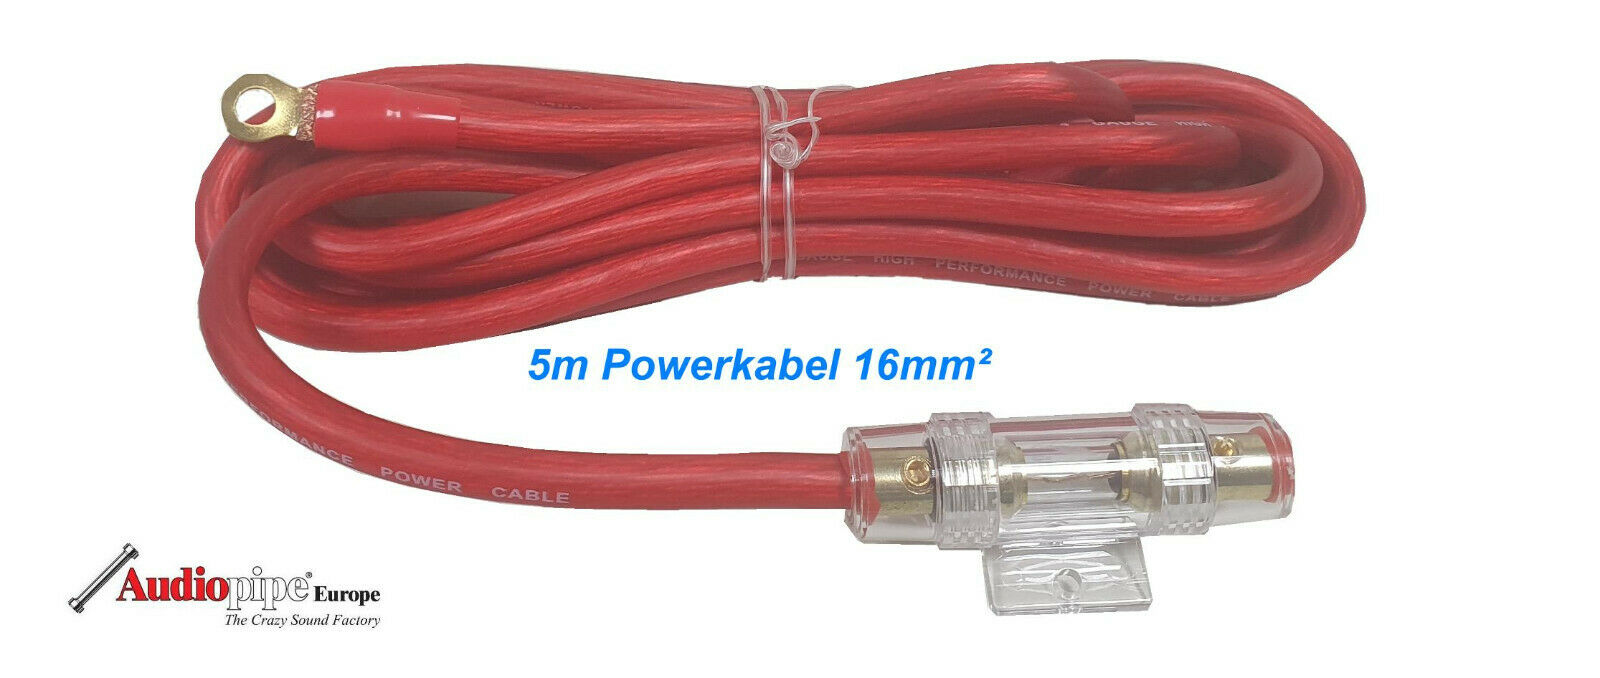 Verstärker Endstufen Anschluss Powerkabel 16mm² - Audiopipe